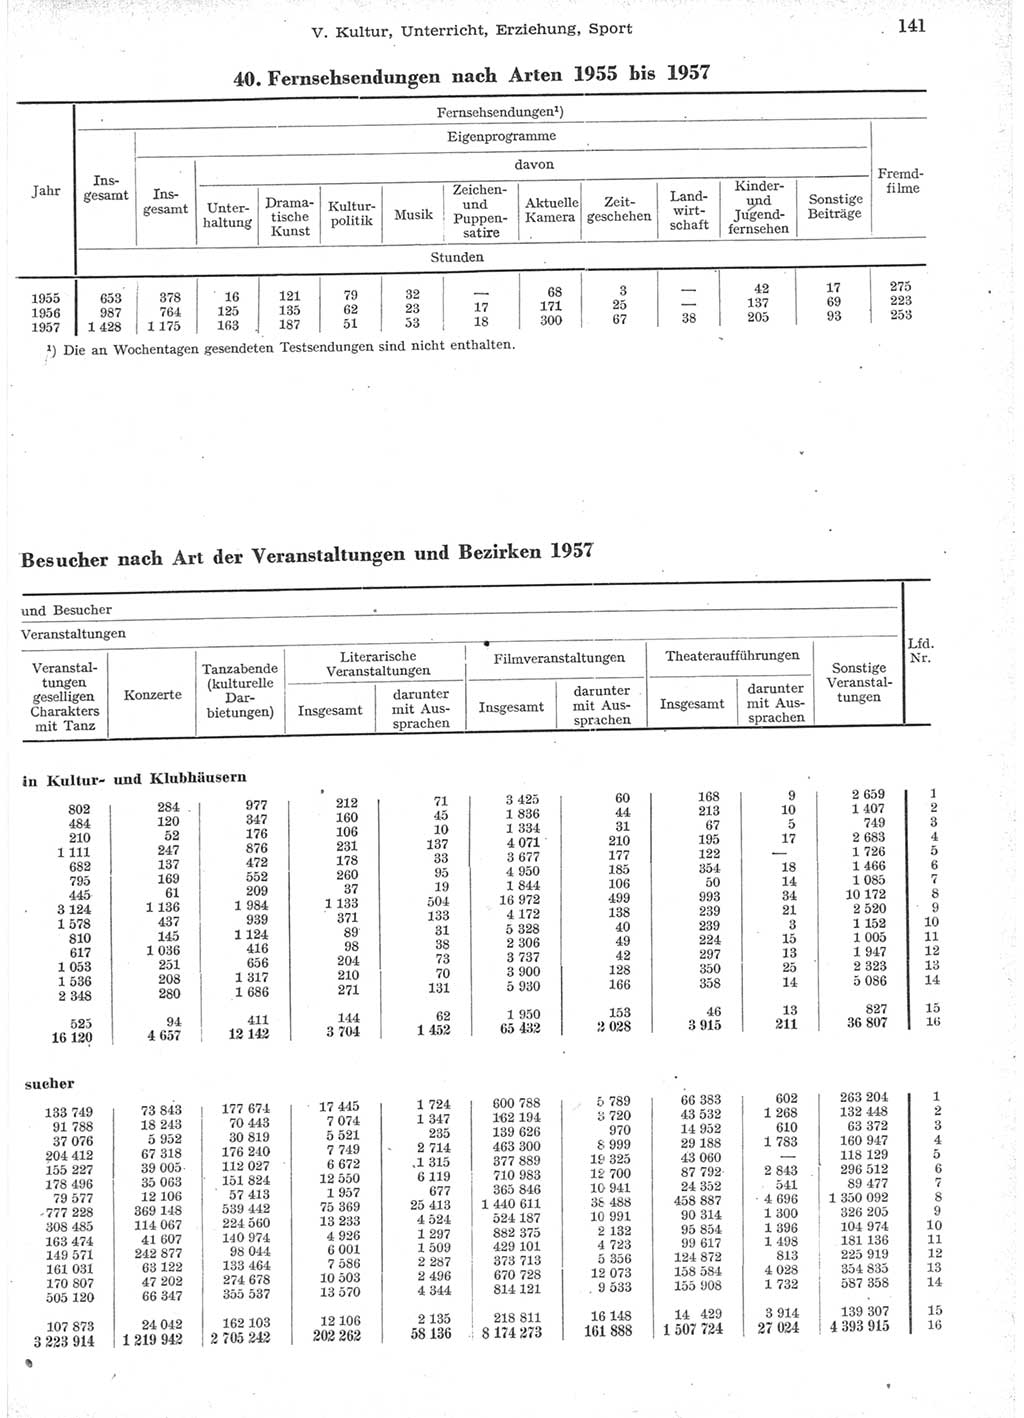 Statistisches Jahrbuch der Deutschen Demokratischen Republik (DDR) 1957, Seite 141 (Stat. Jb. DDR 1957, S. 141)